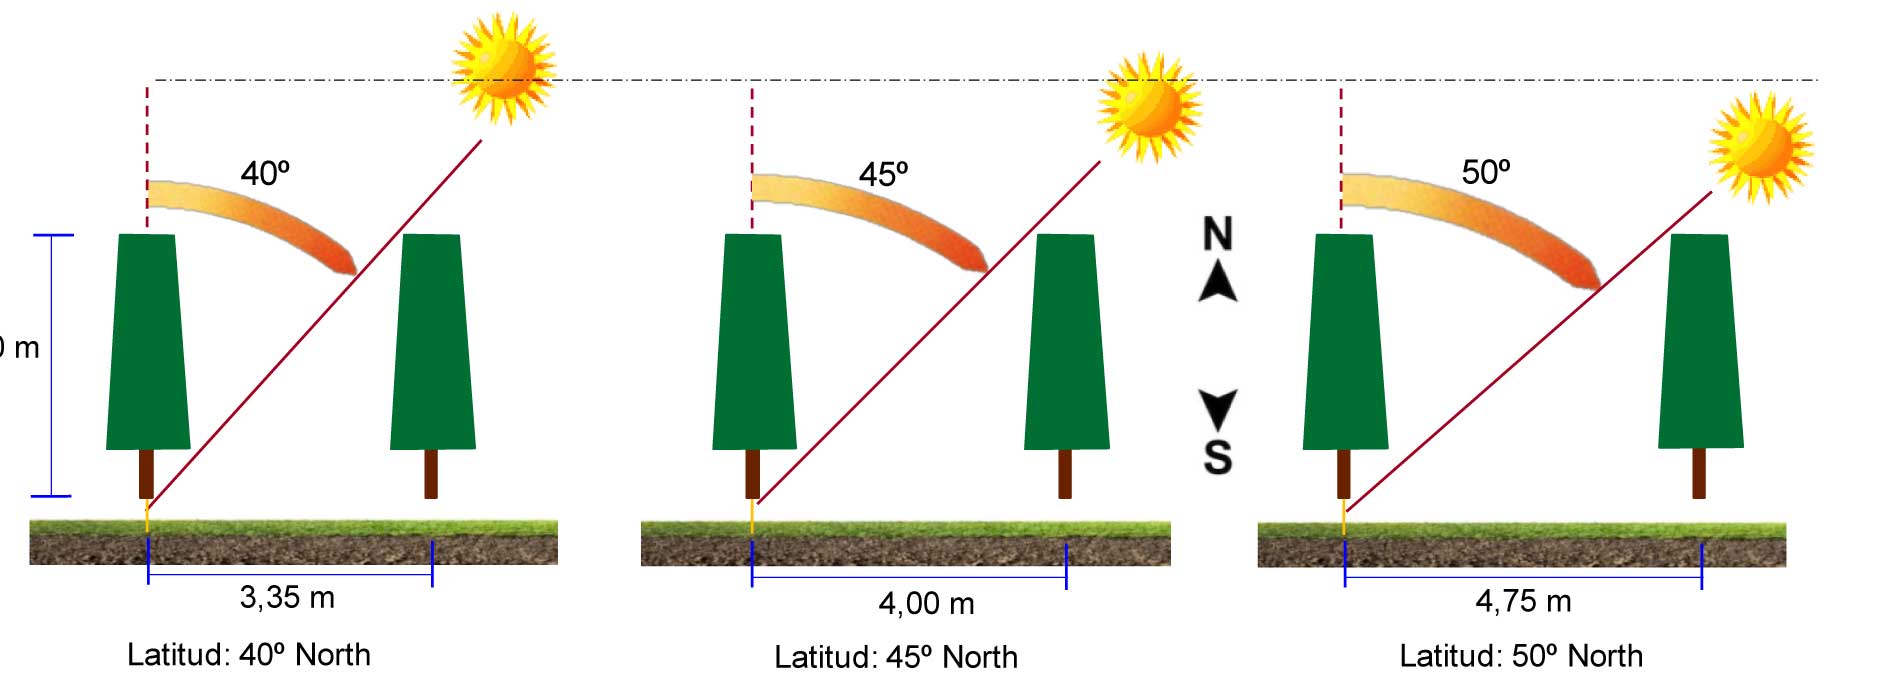 Figura 10: Efecto de la latitud en la distancia entre lneas en plantaciones frutales conducidas en formas planas, bidimensionales o 2D...